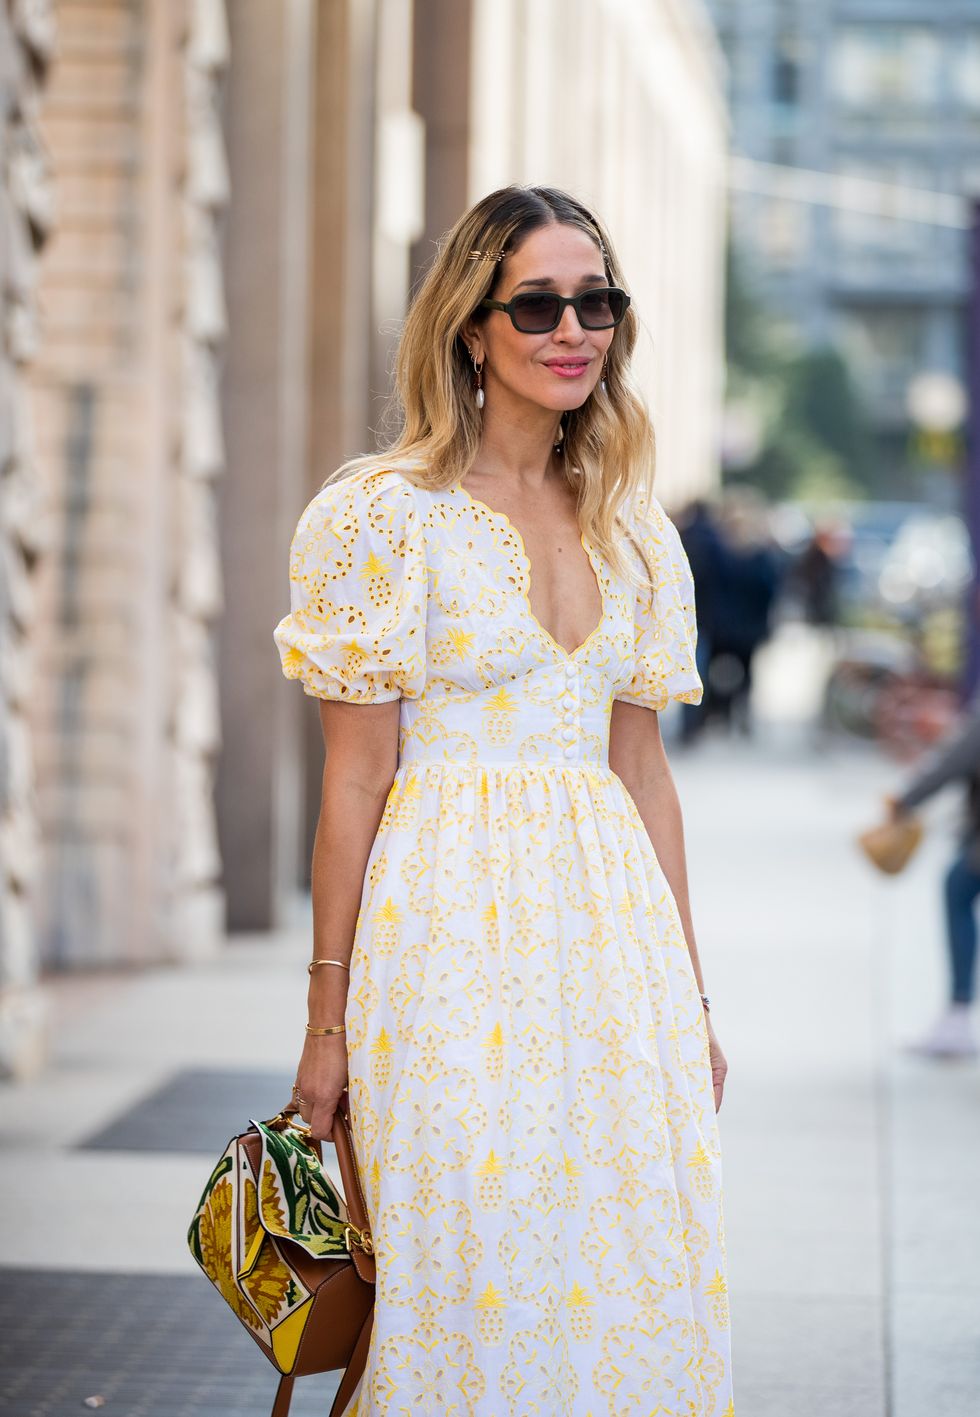 Inspiración street style para invitadas de primavera con vestido blanco y amarillo con bordados